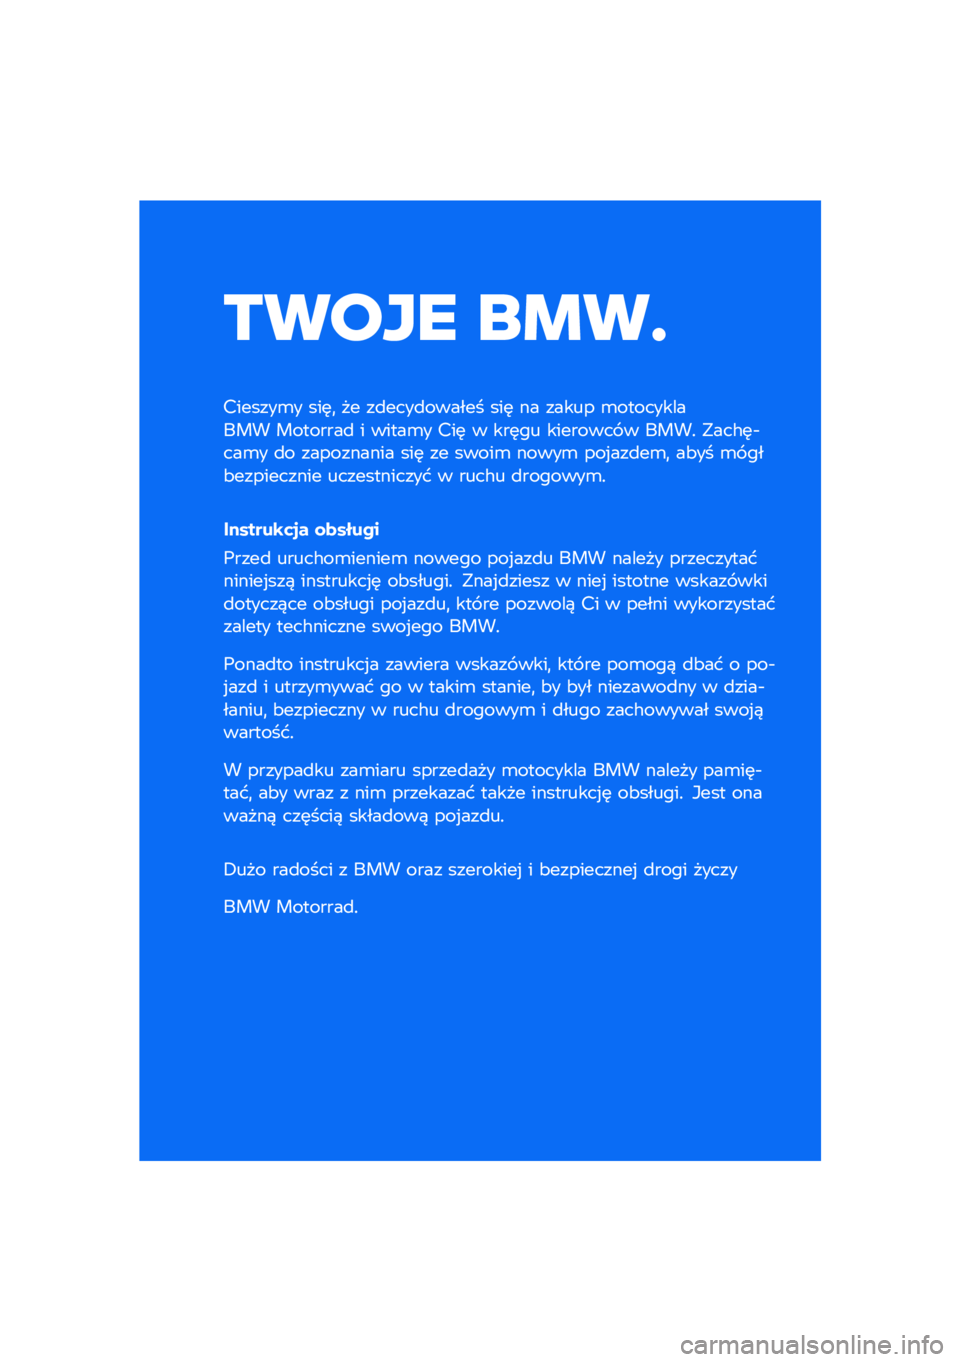 BMW MOTORRAD M 1000 RR 2021  Instrukcja obsługi (in Polish) ����� ��\b��	
�������\b� ���	�
 �� ��
����
������ ���	 �� ����� �\b����������� ��������
 � �����\b� ���	 � ���	�� �������� �